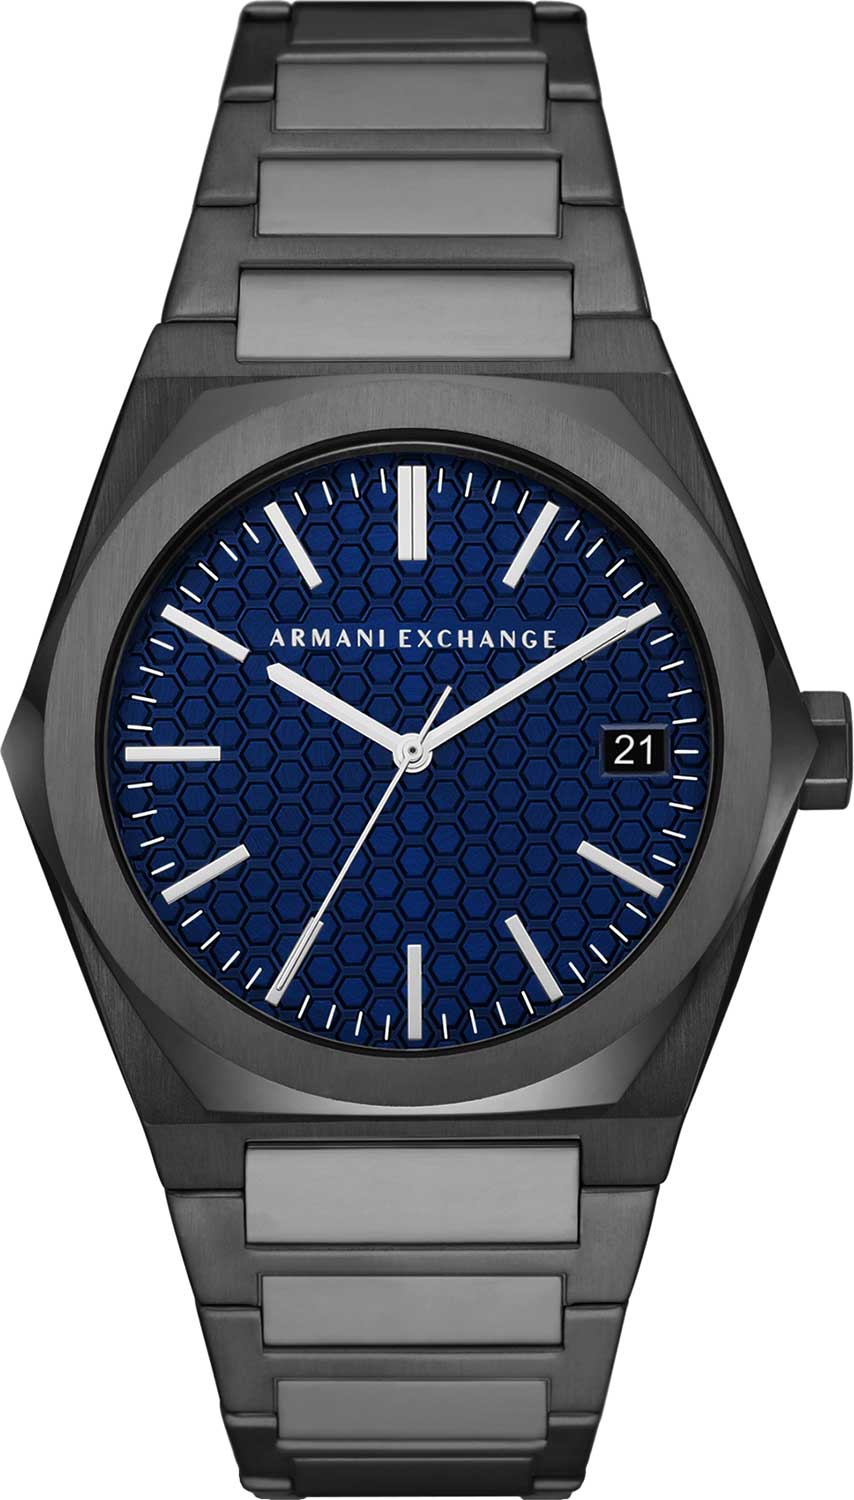   Armani Exchange AX2811